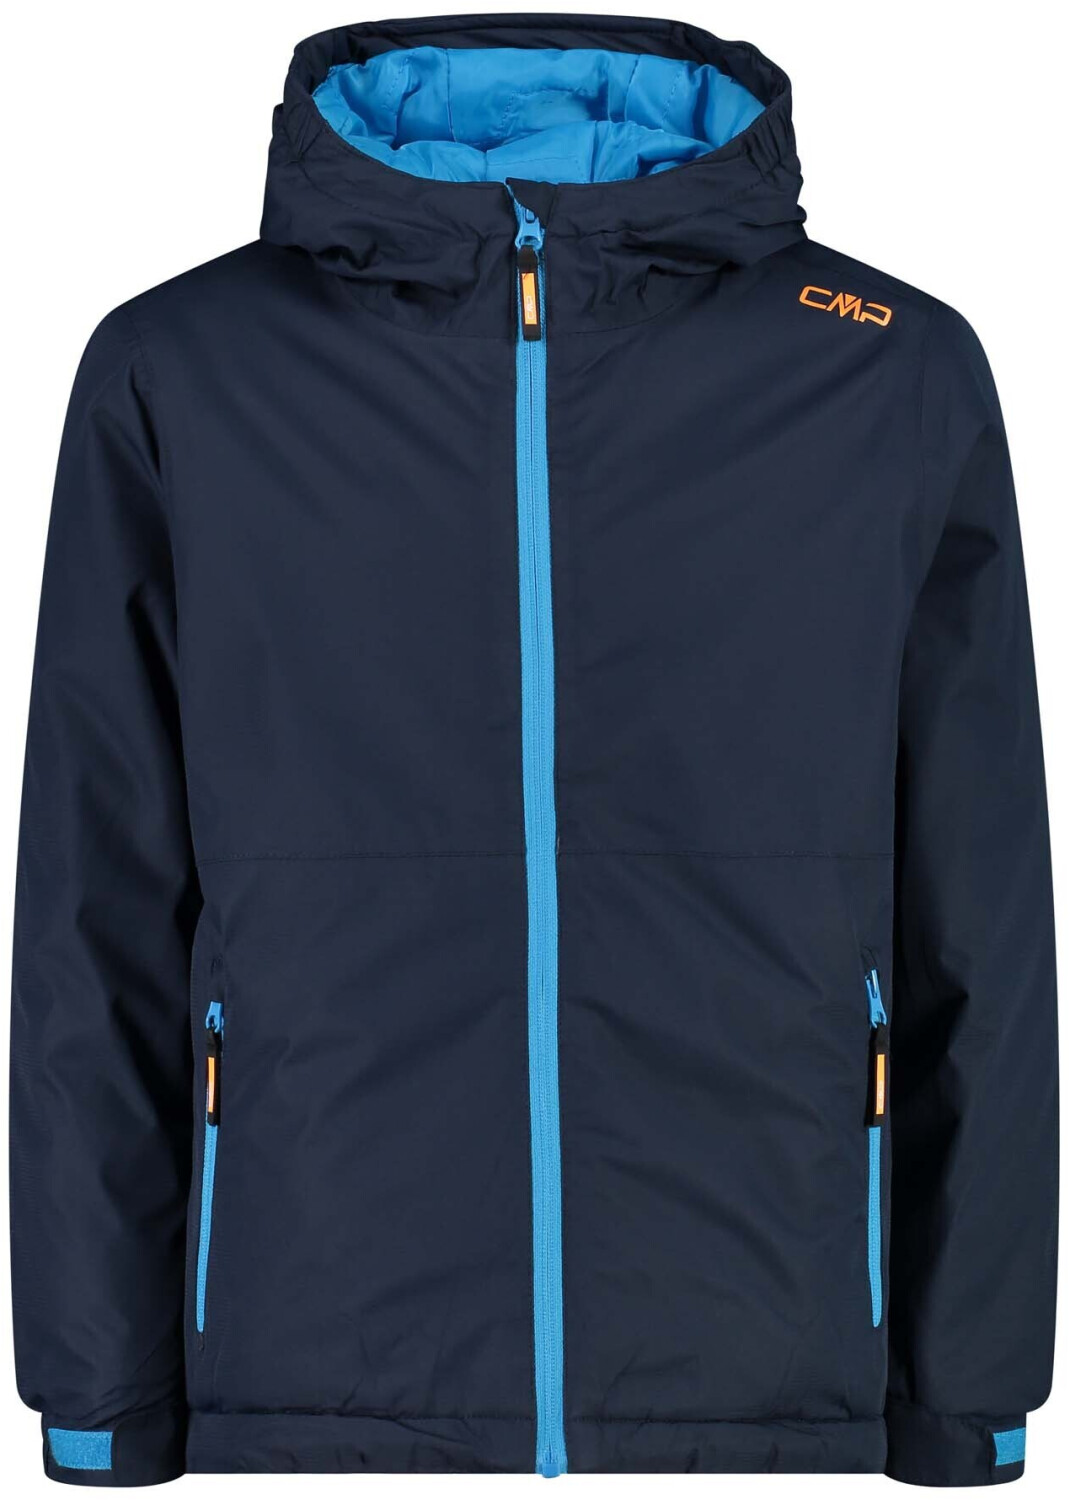 CMP Kid Jacket Fix Hooded black blue ab 27,99 € | Preisvergleich bei